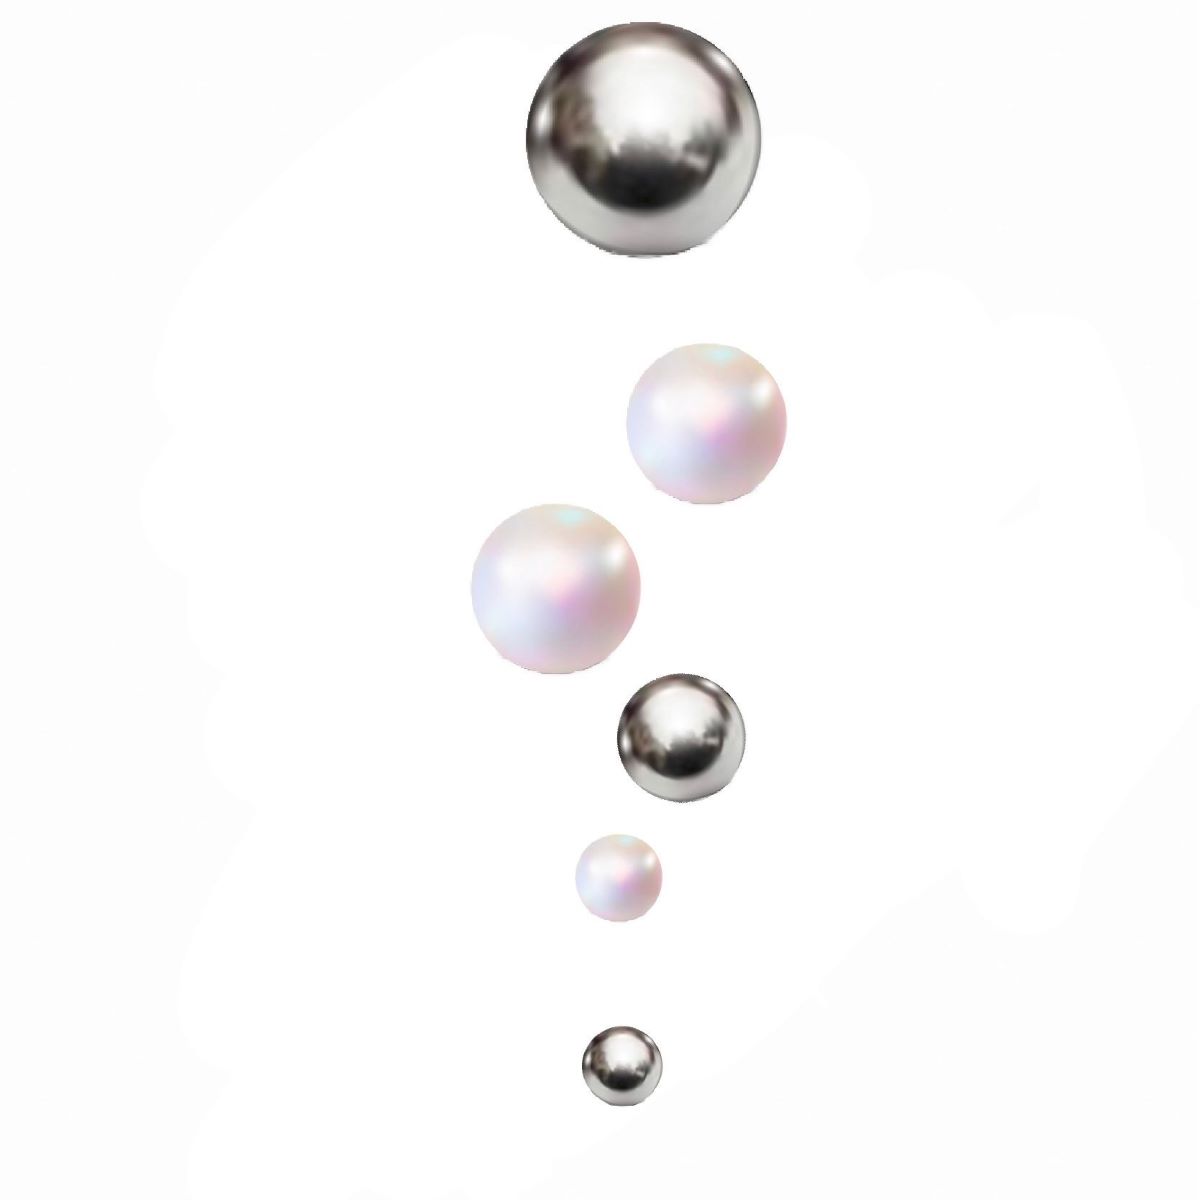 大小様々な大きさの真珠の玉とシルバーの玉。音の響きをビジュアルで表現。